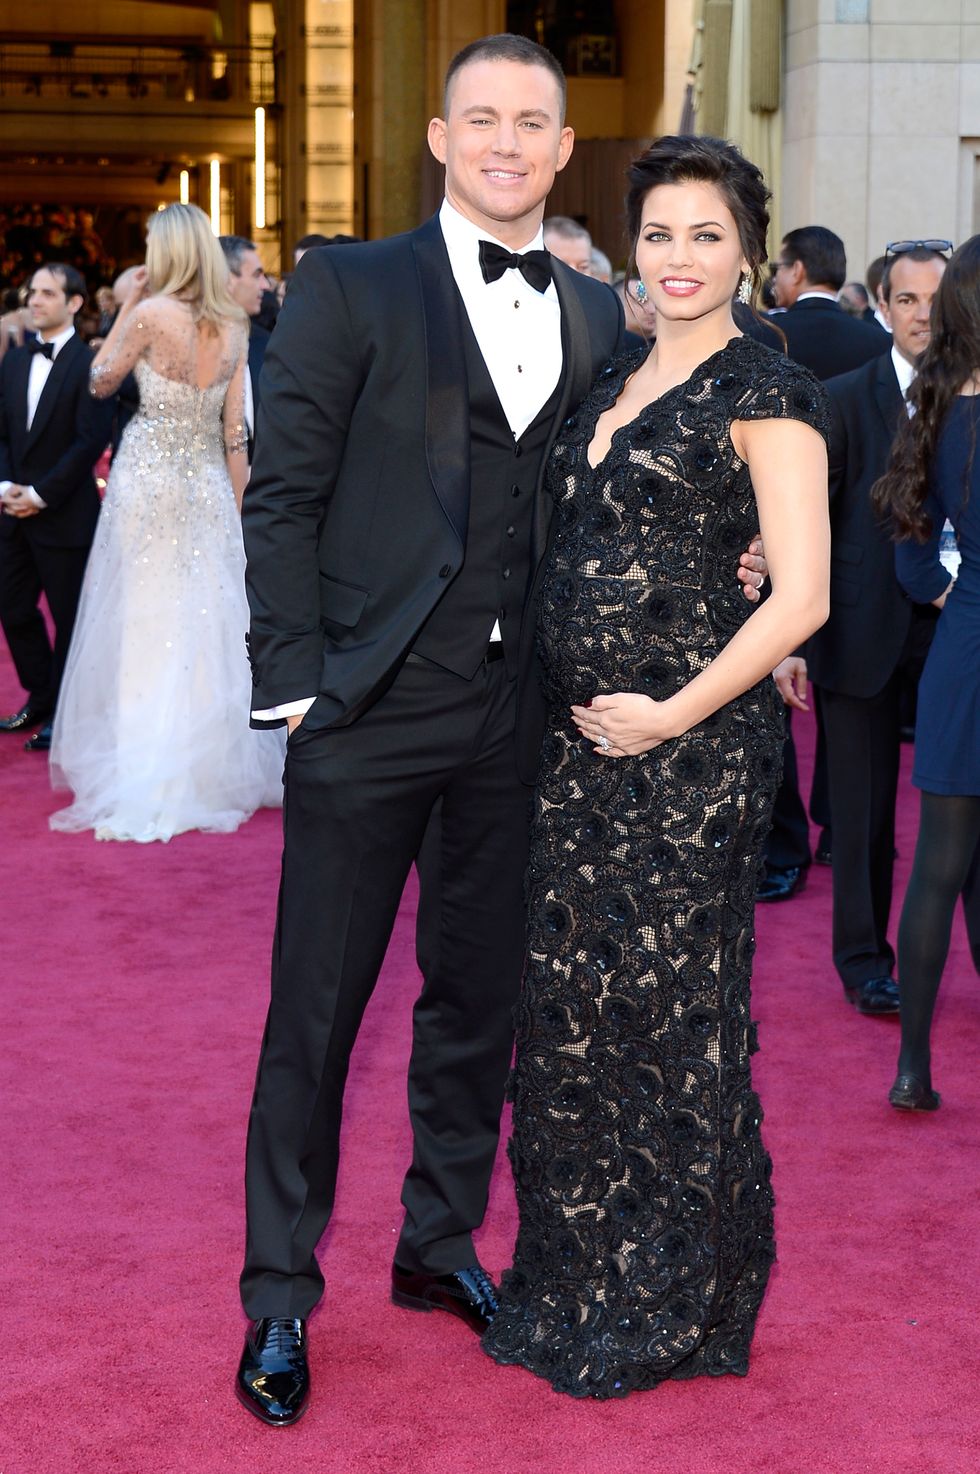 Channing Tatum and Jenna Dewan Tatum at the Oscars